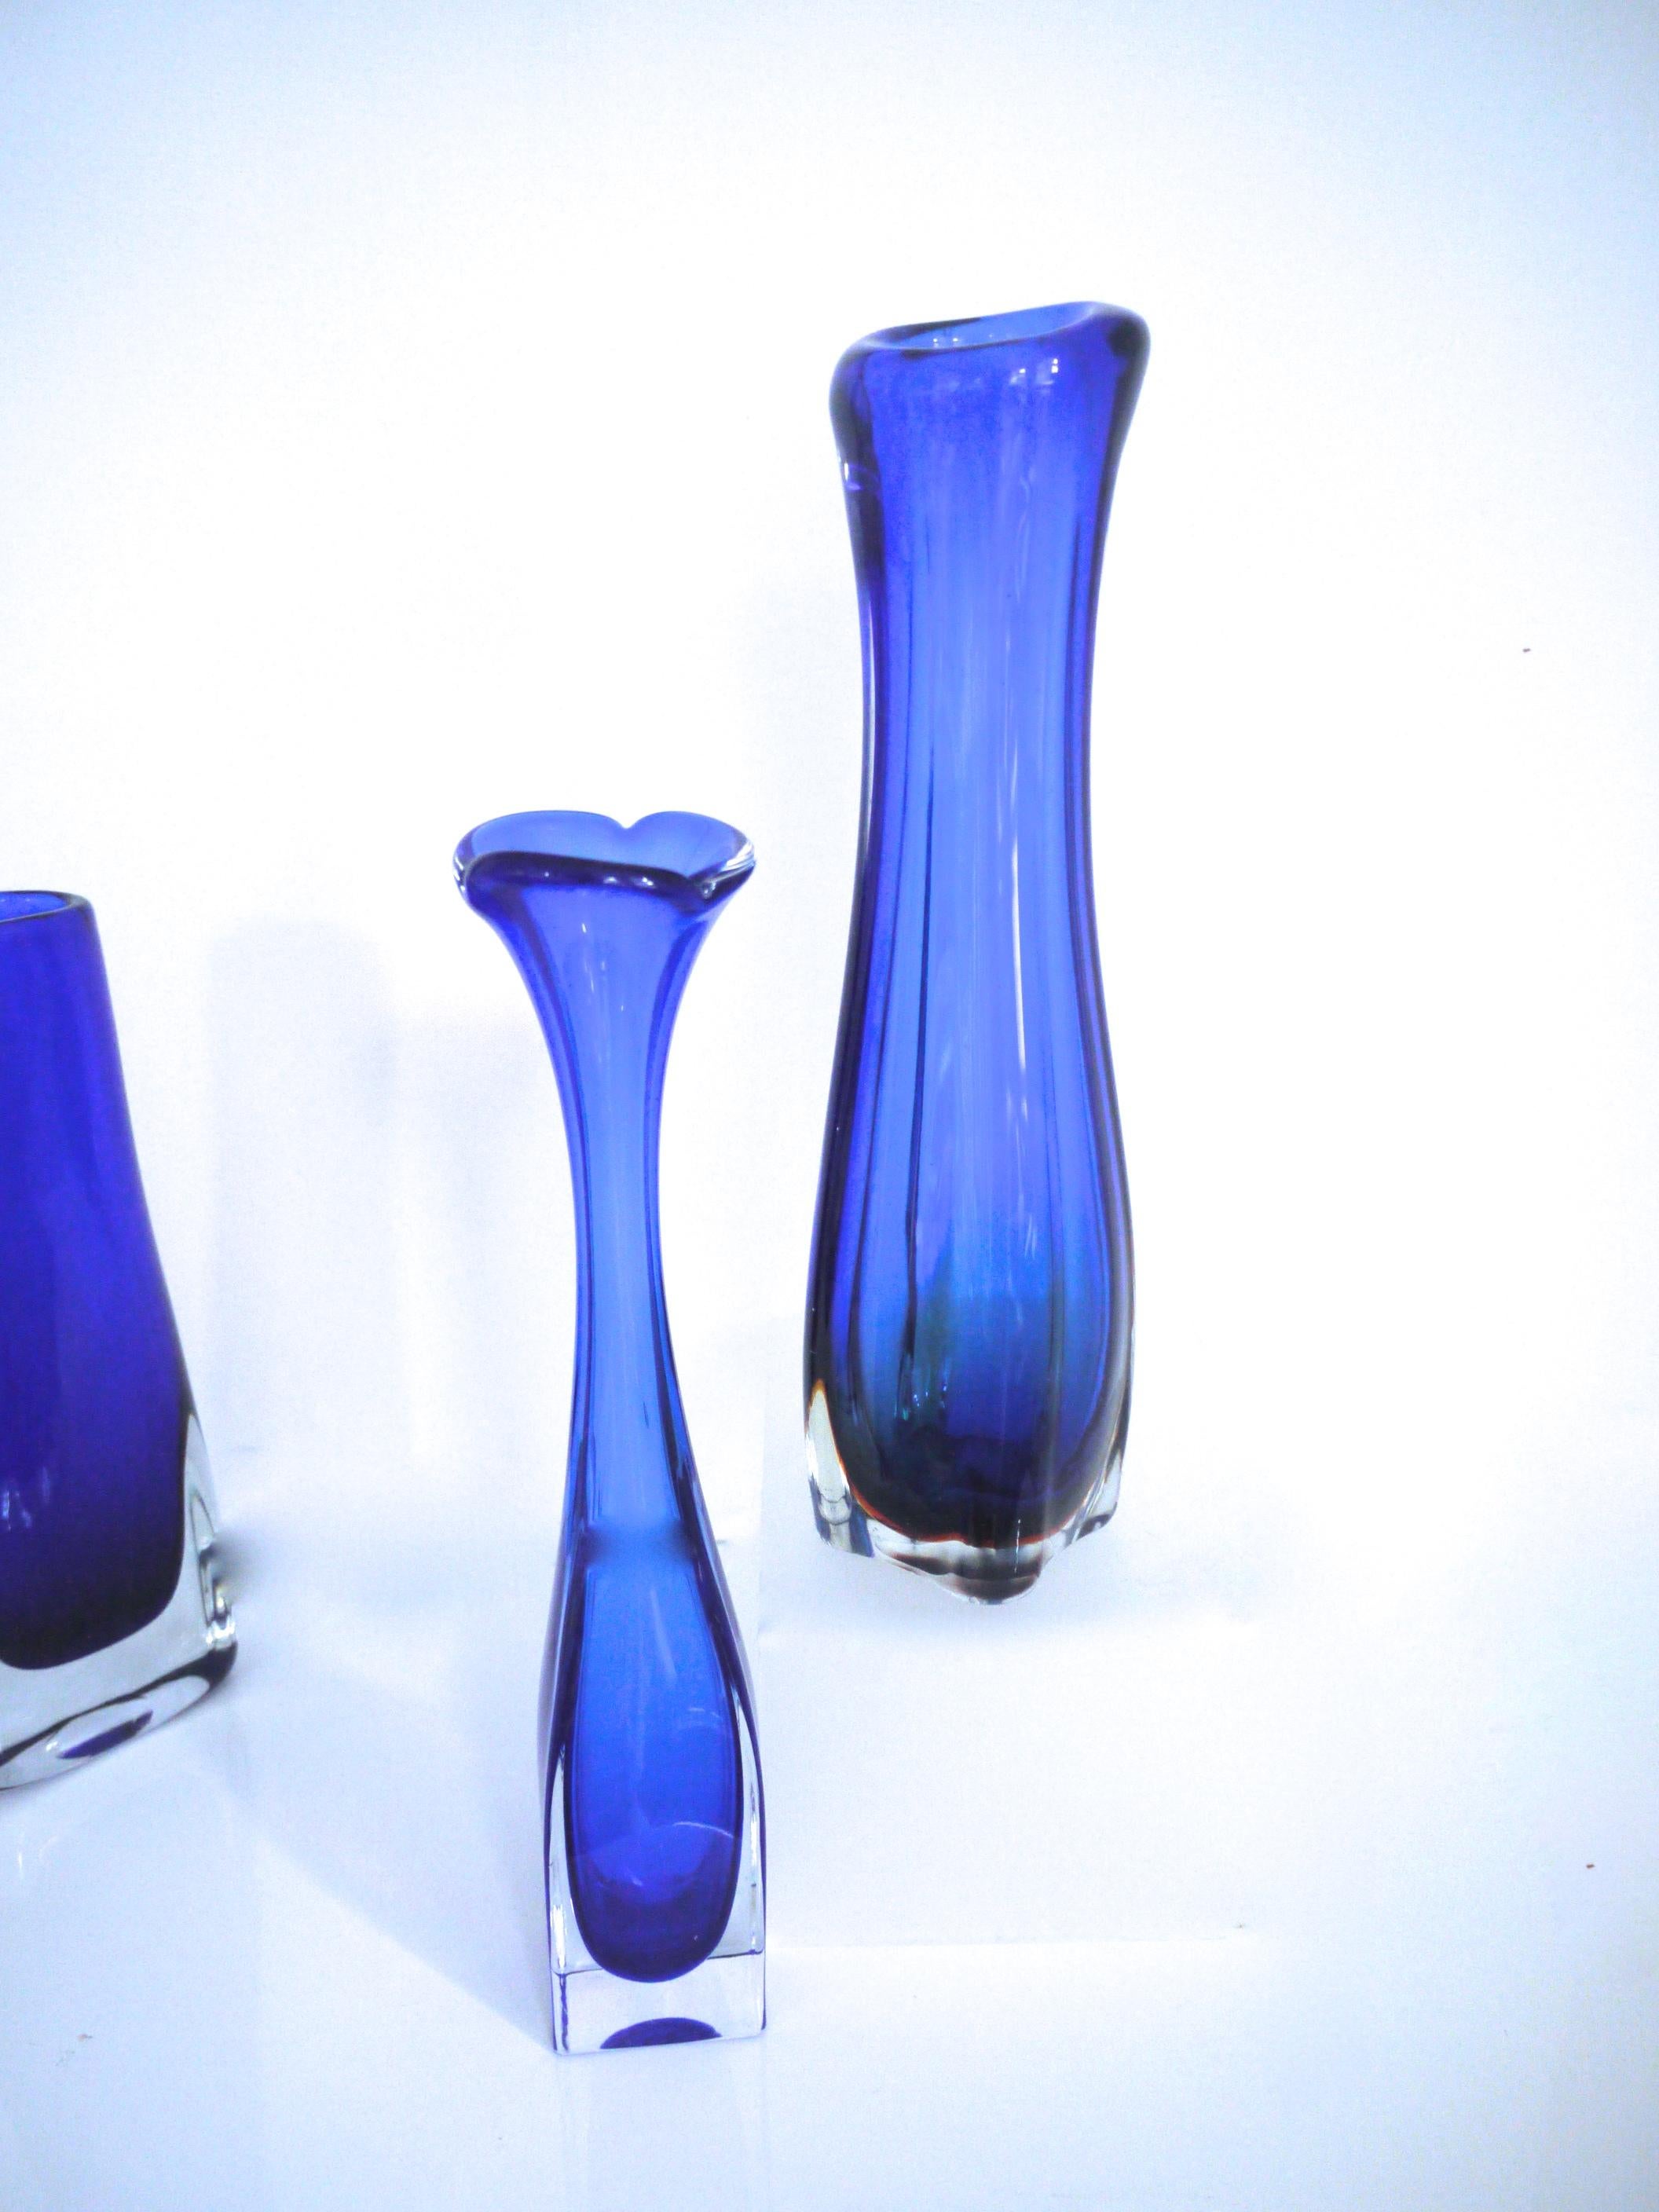 Pair of Cobalt Scandinavian Modern vases by Bo Borgstrom for Aseda

Aseda Glasbruk was founded in Sweden in 1947. Bo Borgstrom began designing glass for Aseda in 1960. 

Aseda trumpet vase 1965
Height 30 cms
Base 5cms x 5 cms weight 0.706